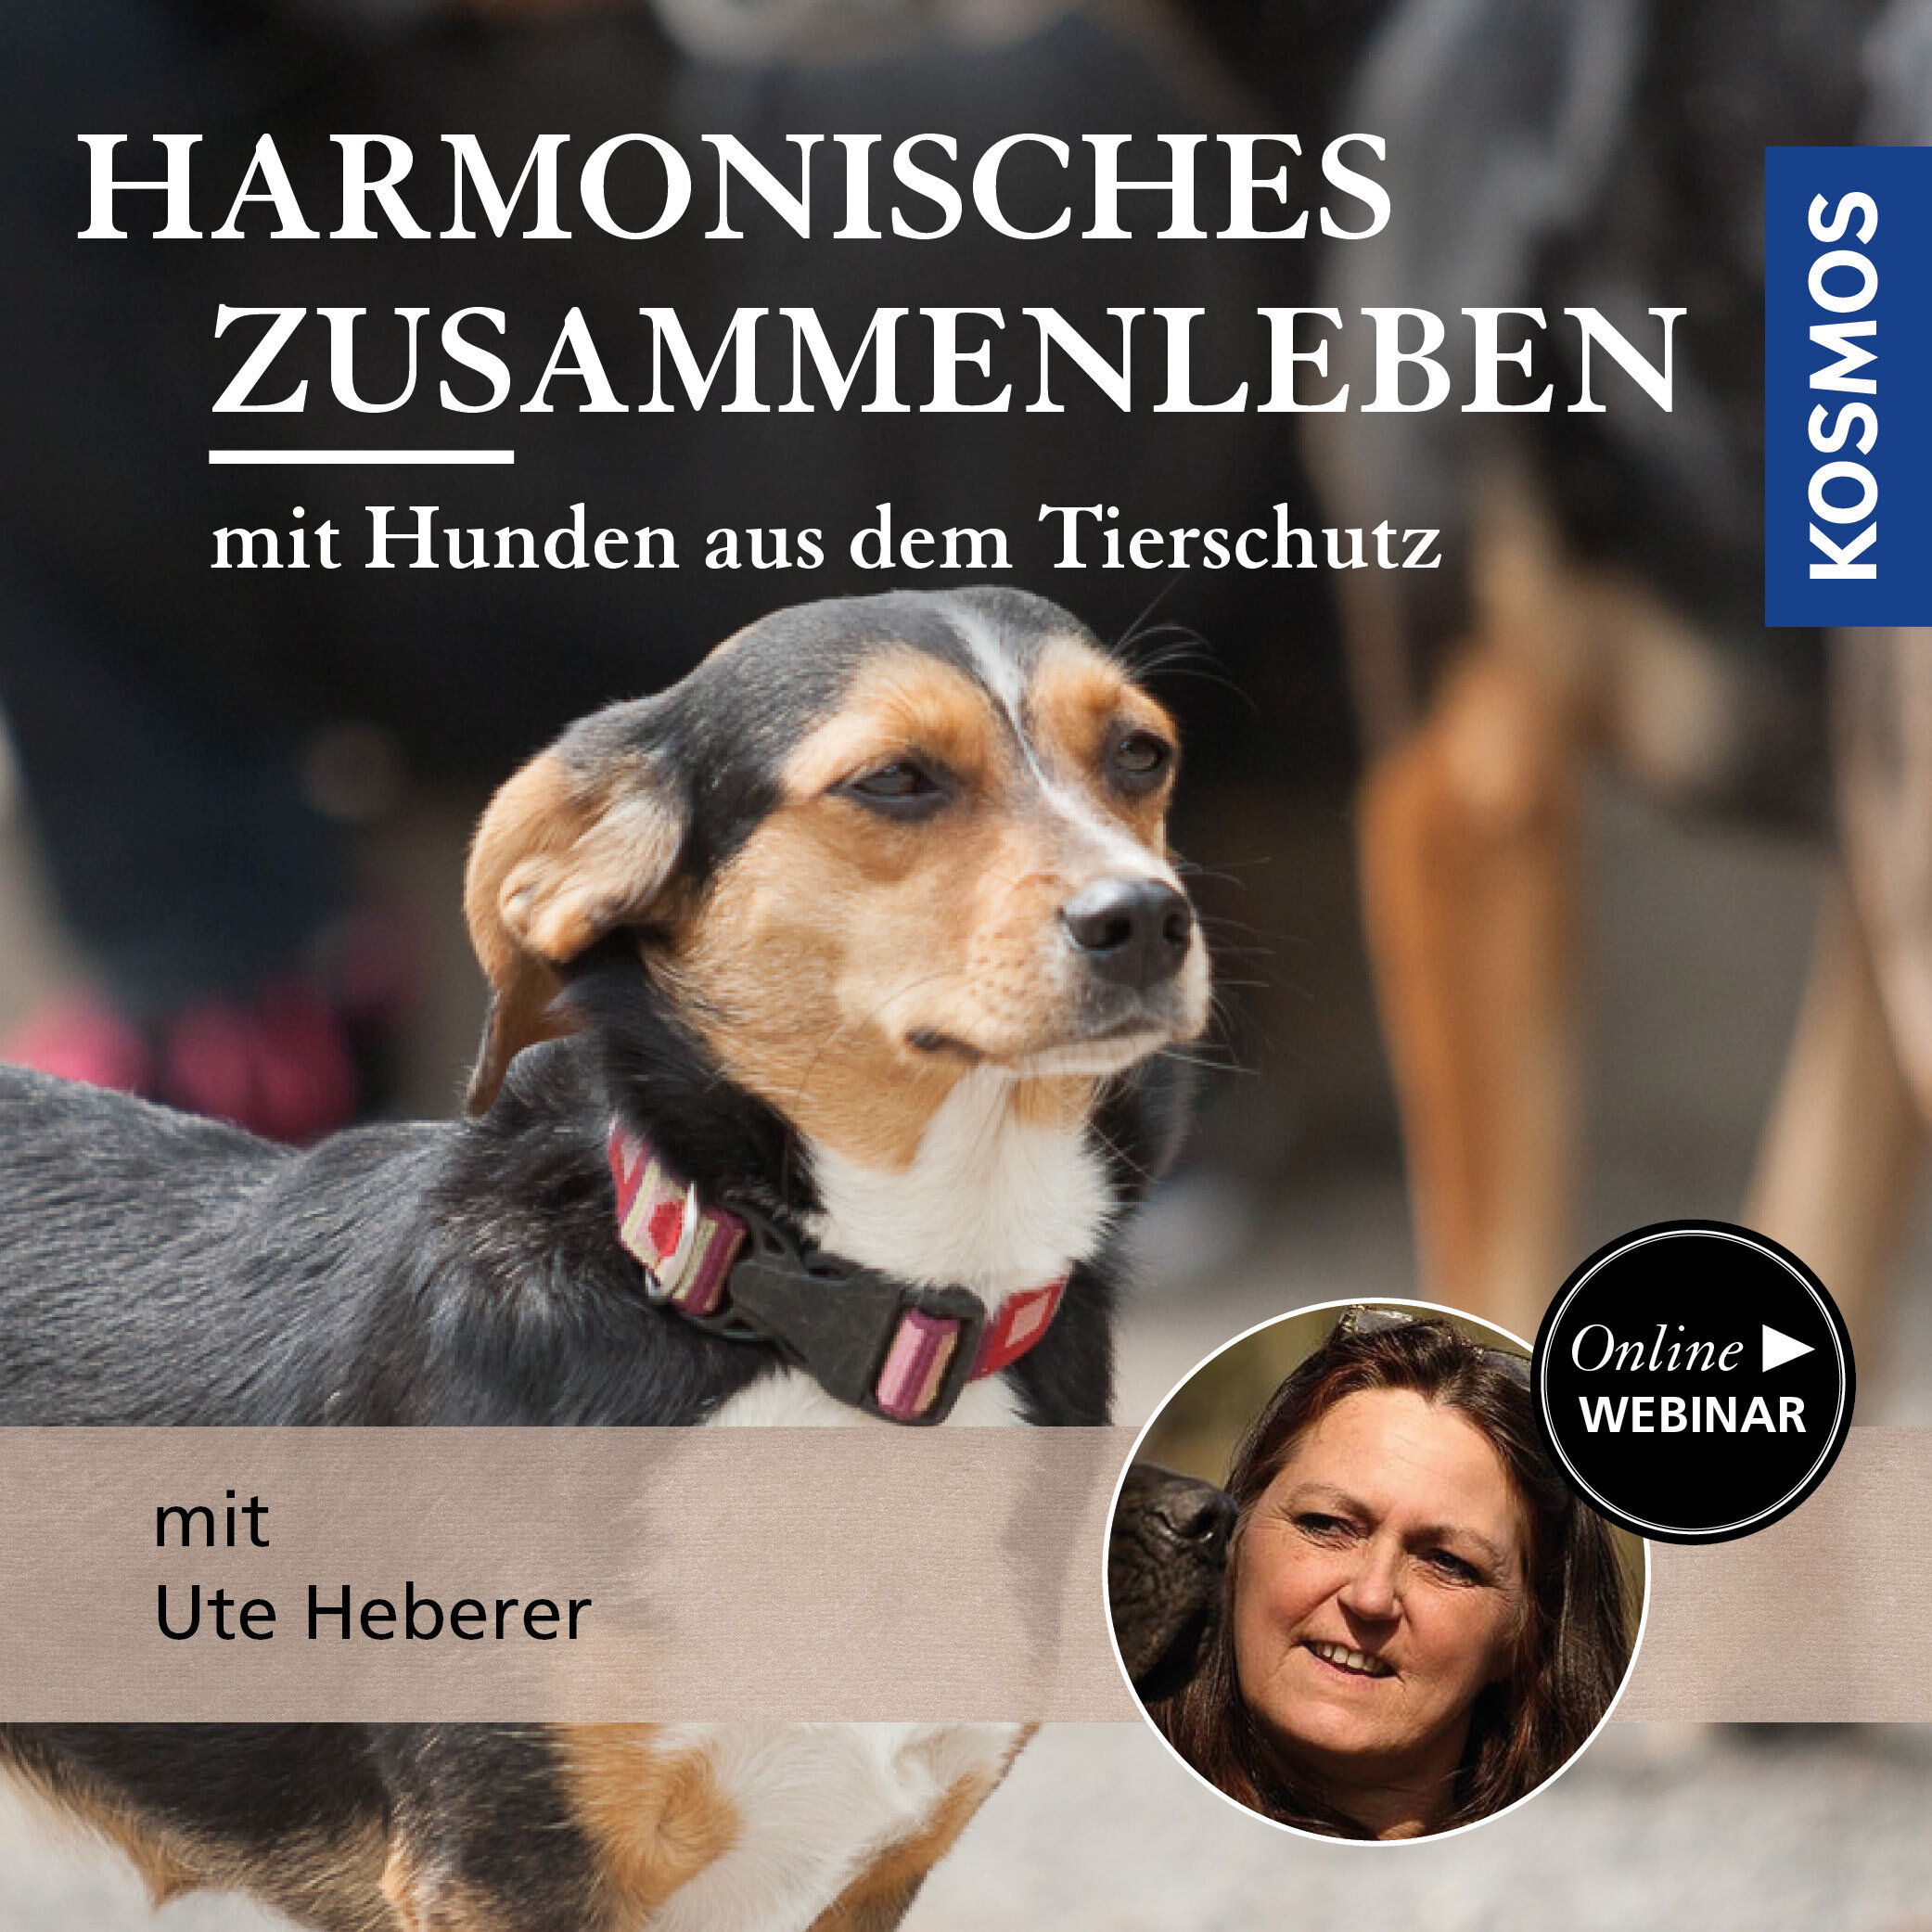 Harmonisches Zusammenleben mit Hunden aus dem Tierschutz